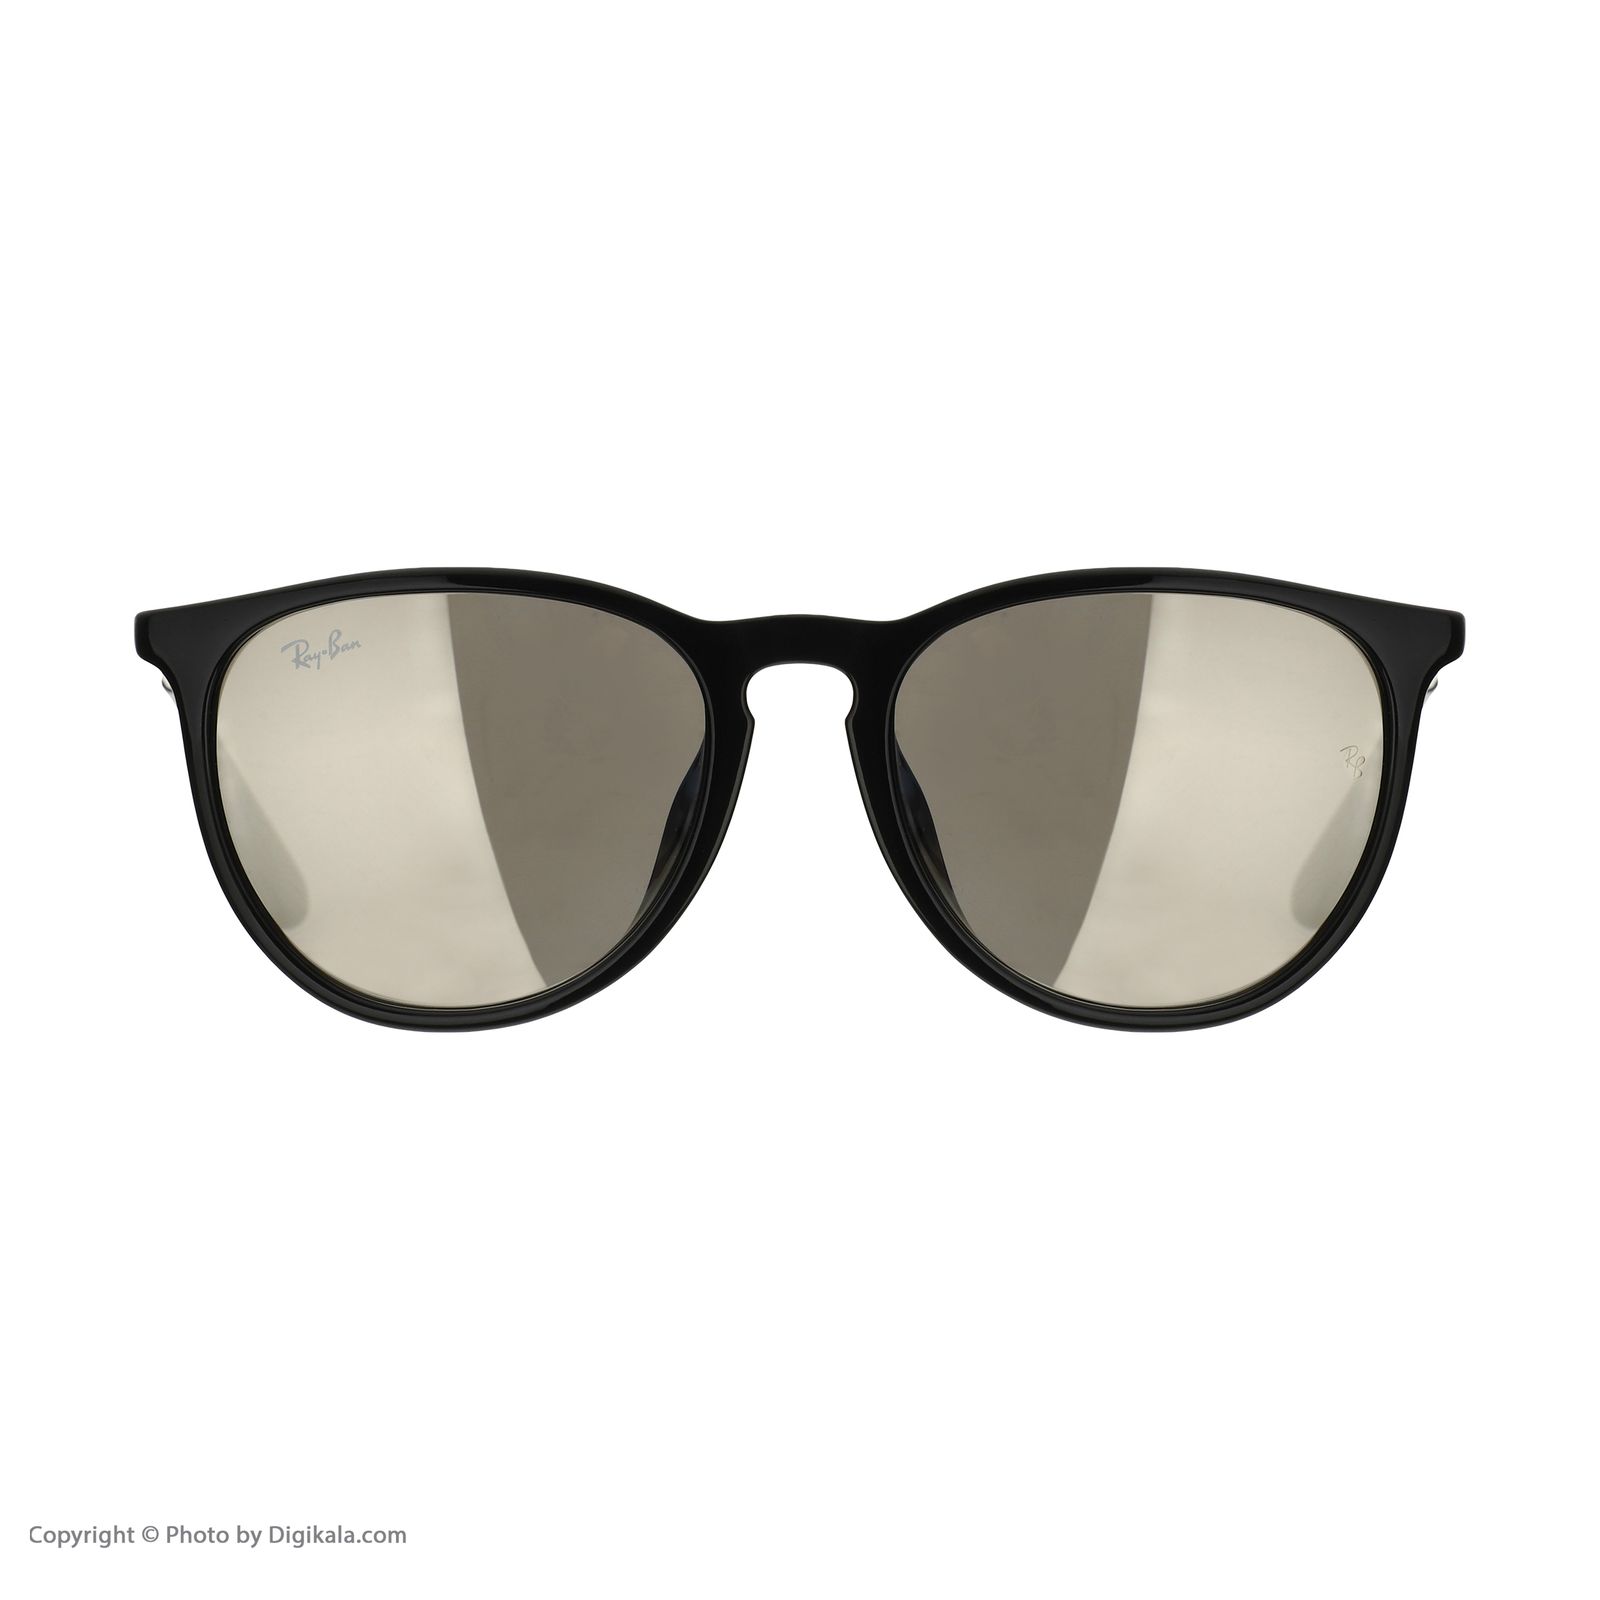 عینک آفتابی ری بن مدل 4171 601-5A -  - 2